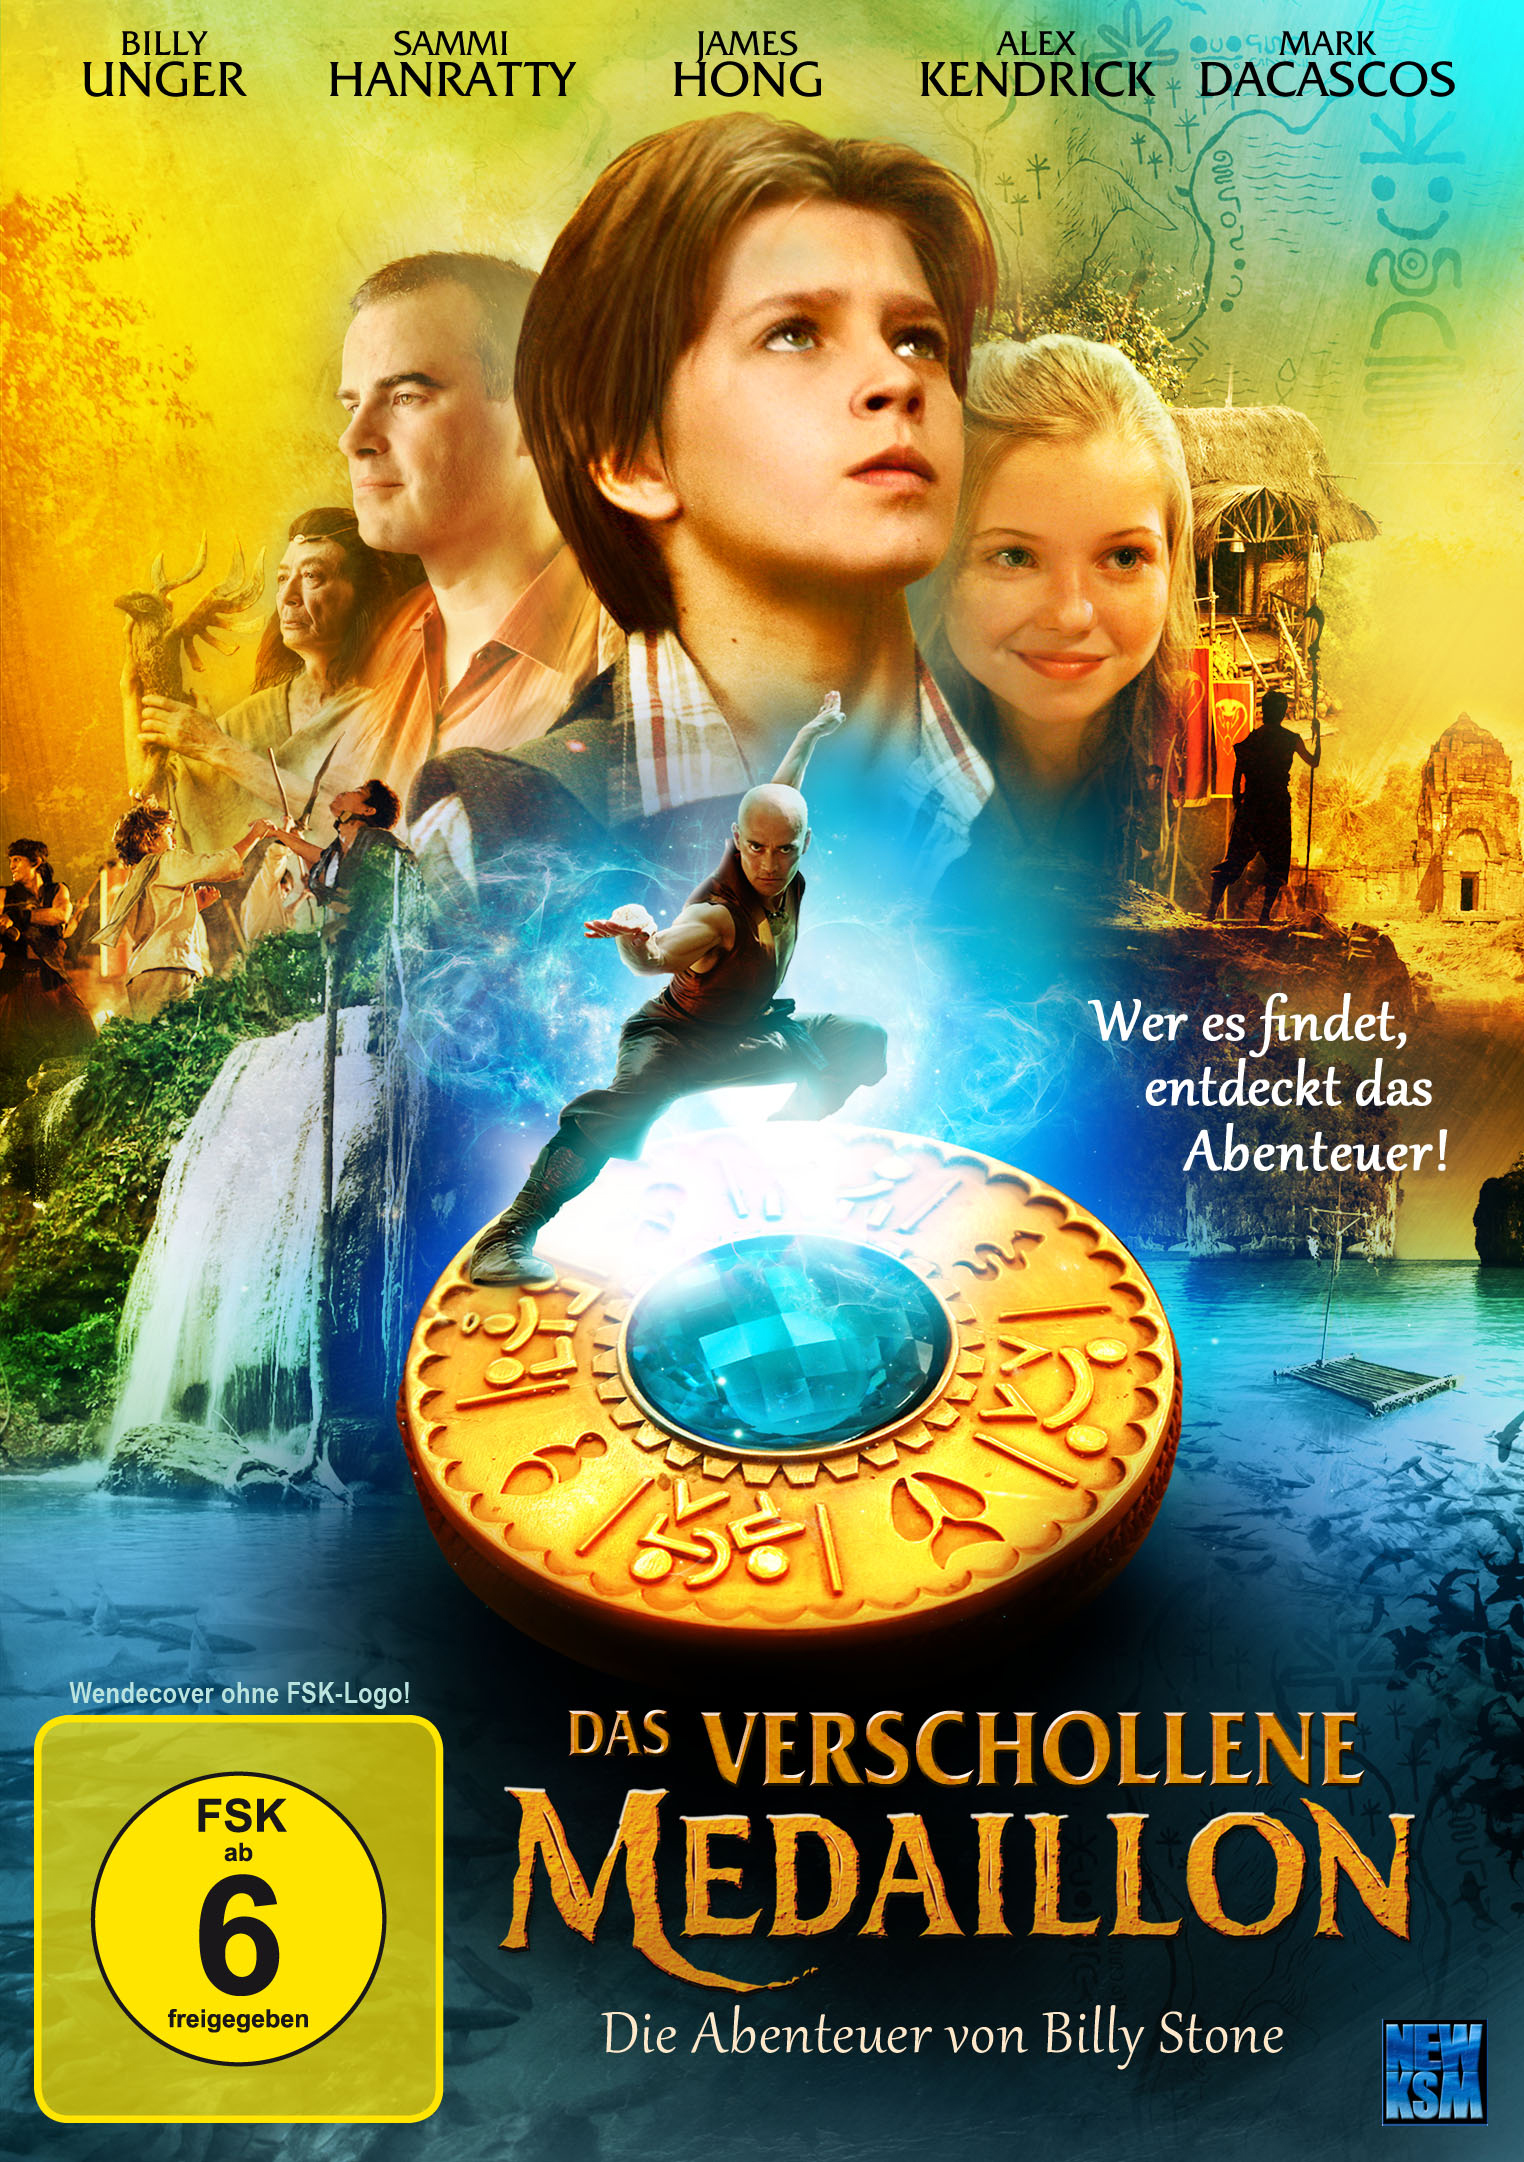 Das verschollene Medaillon DVD Billy von Abenteuer – Stone Die